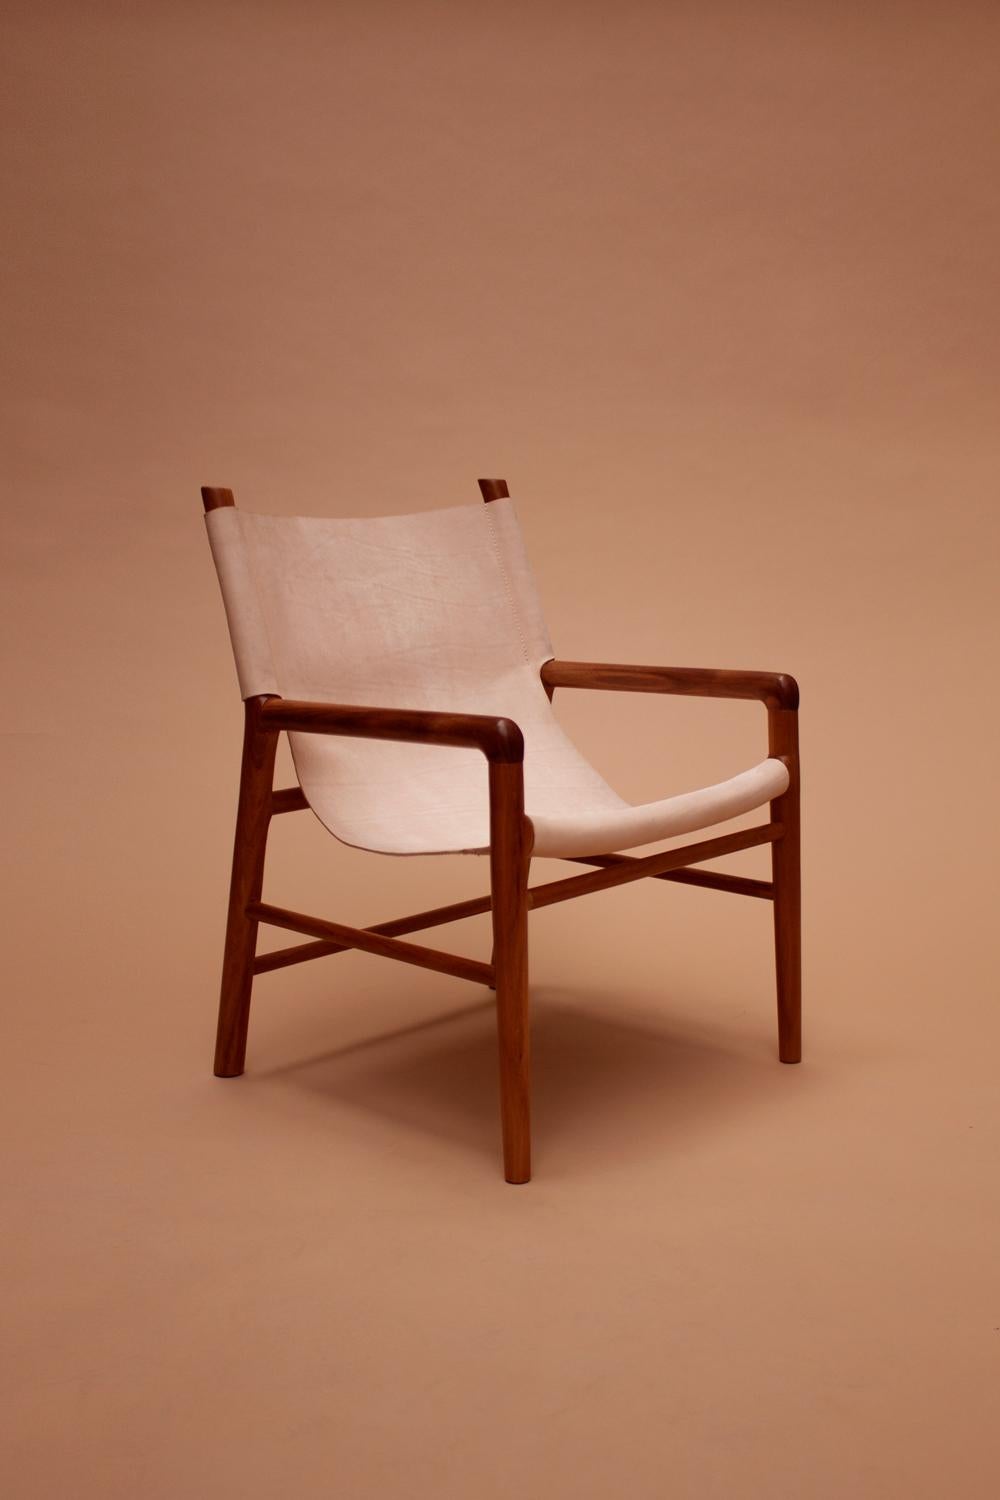 
Unser exquisiter, handgefertigter Stuhl aus tropischem Tzalam-Holz und Naturleder ist ein wahres Meisterwerk von León León Design in Mexiko-Stadt.

Jeder Stuhl verfügt über eine sorgfältig von Hand geschnitzte Tzalam-Holzstruktur, die die